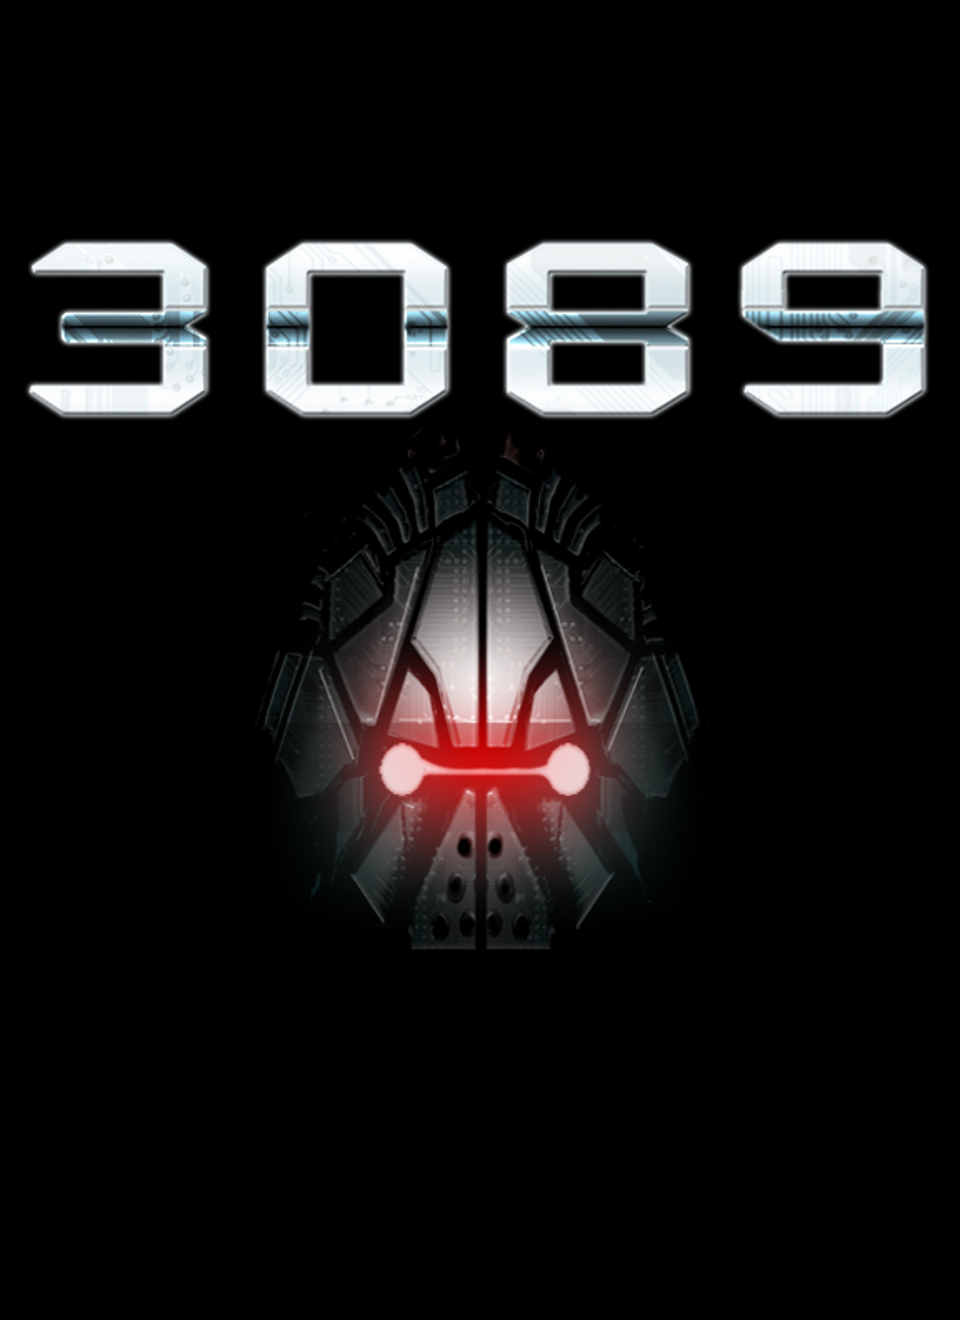 3089: Futuristic Action RPG